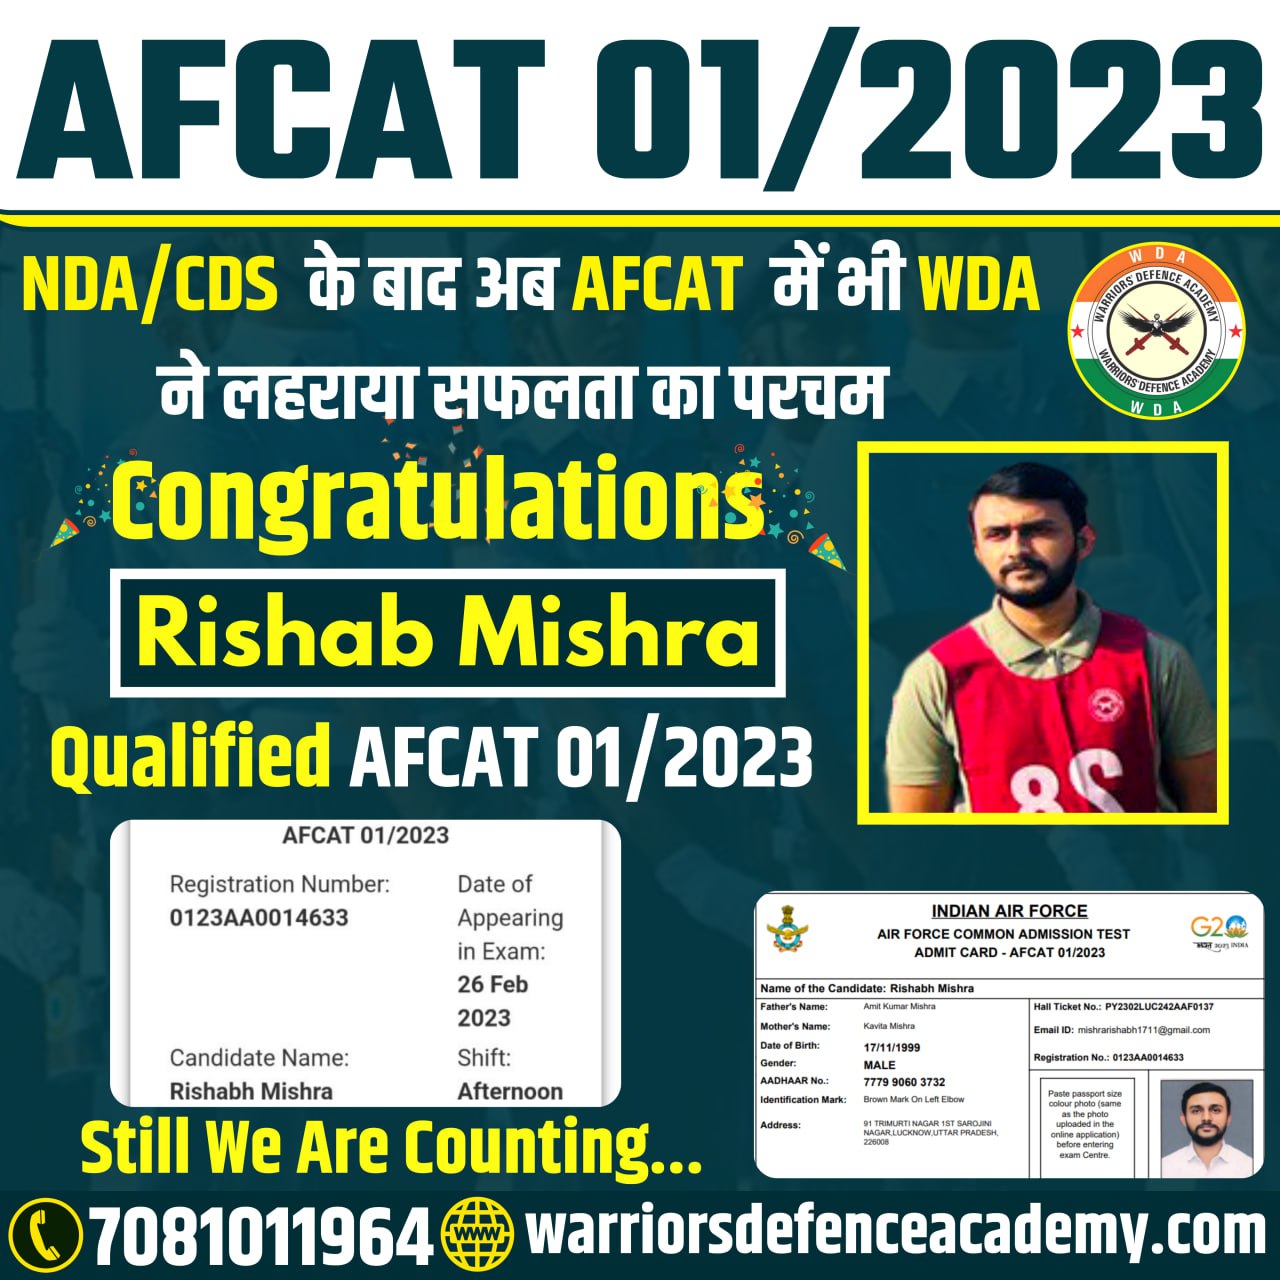 Best NDA Academy in Lucknow | Best NDA Coaching in Lucknow, India | Warriors Defence Academy Best NDA Coaching in Lucknow